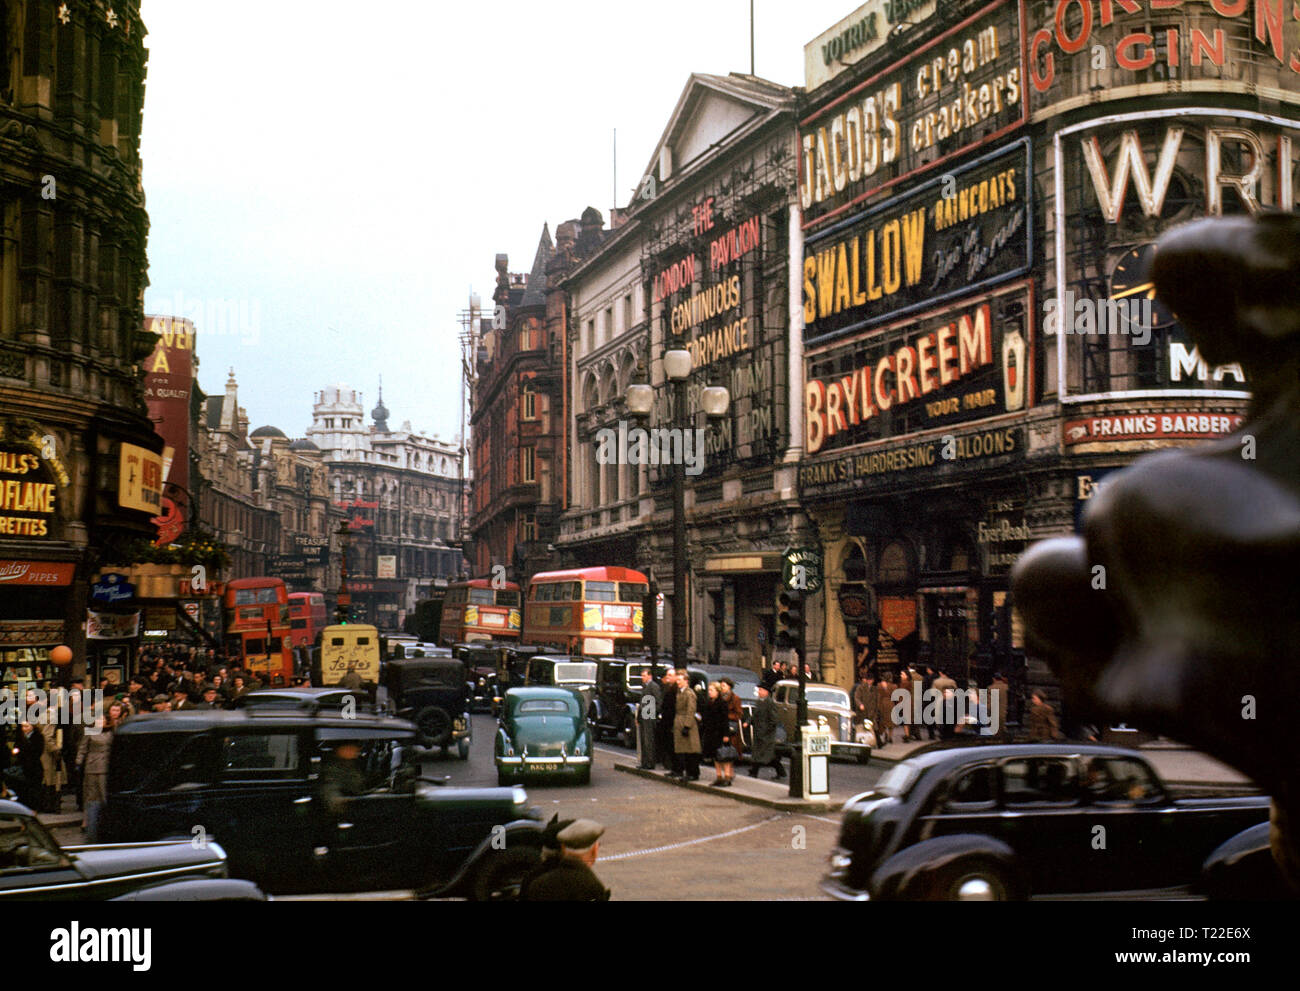 LONDON PICCADILLY 1940er SHAFTESBURY AVENUE ARCHIV 1940er Jahre Vintage-Farbbild der Shaftesbury Avenue voller Verkehr traditionelle schwarze Taxis und rote Londoner Busse, die vom Piccadilly Circus, London um 1940 aus gesehen wurden Stockfoto